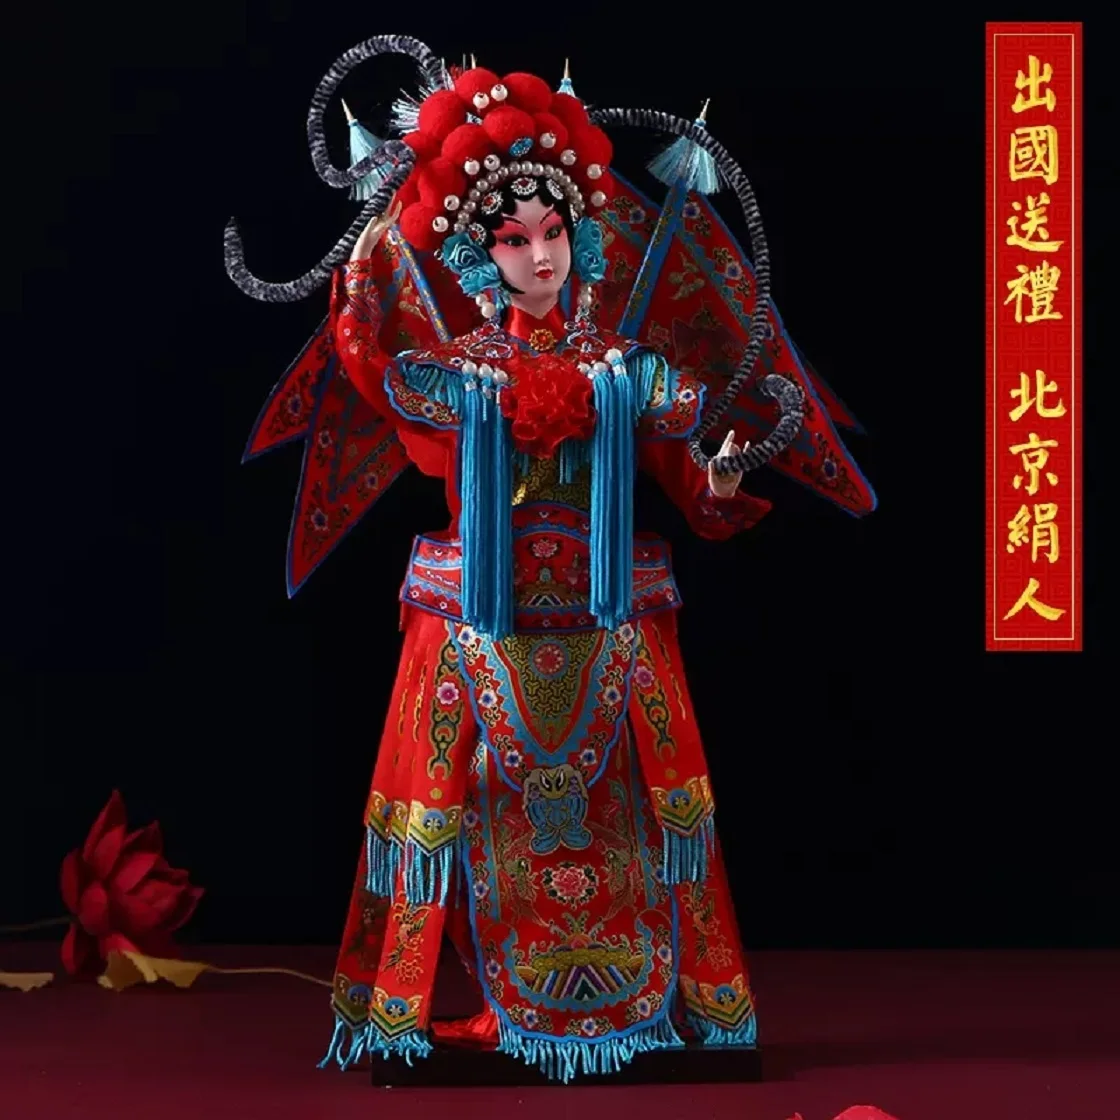 

Большой Пекинский Шелковый человек, Пекинская опера, маска для лица, украшения, персонажи оперы, народное ремесло, подарки для иностранных дел